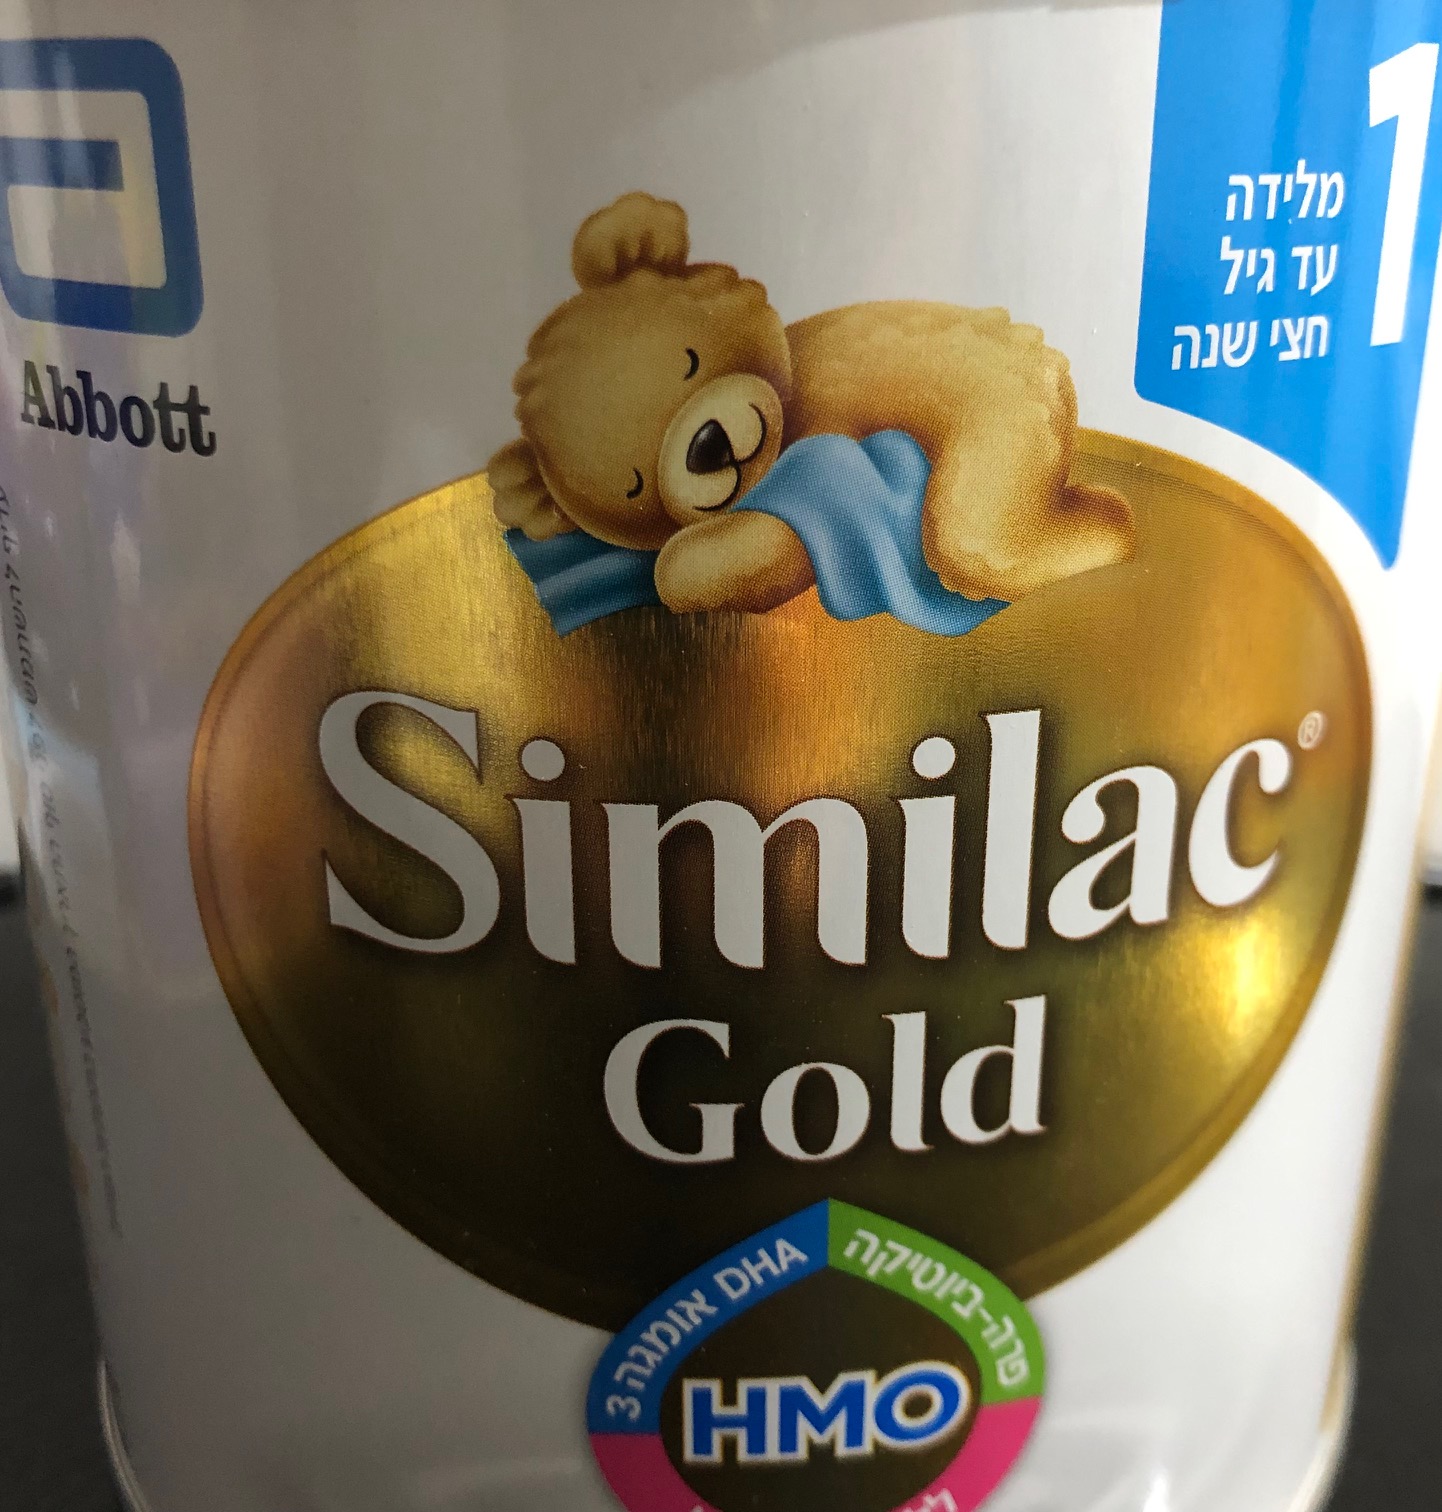 תמונה 2 ,4 יח' סימילאק GOLD שלב 1 למכירה בירושלים לתינוק ולילד  אחר